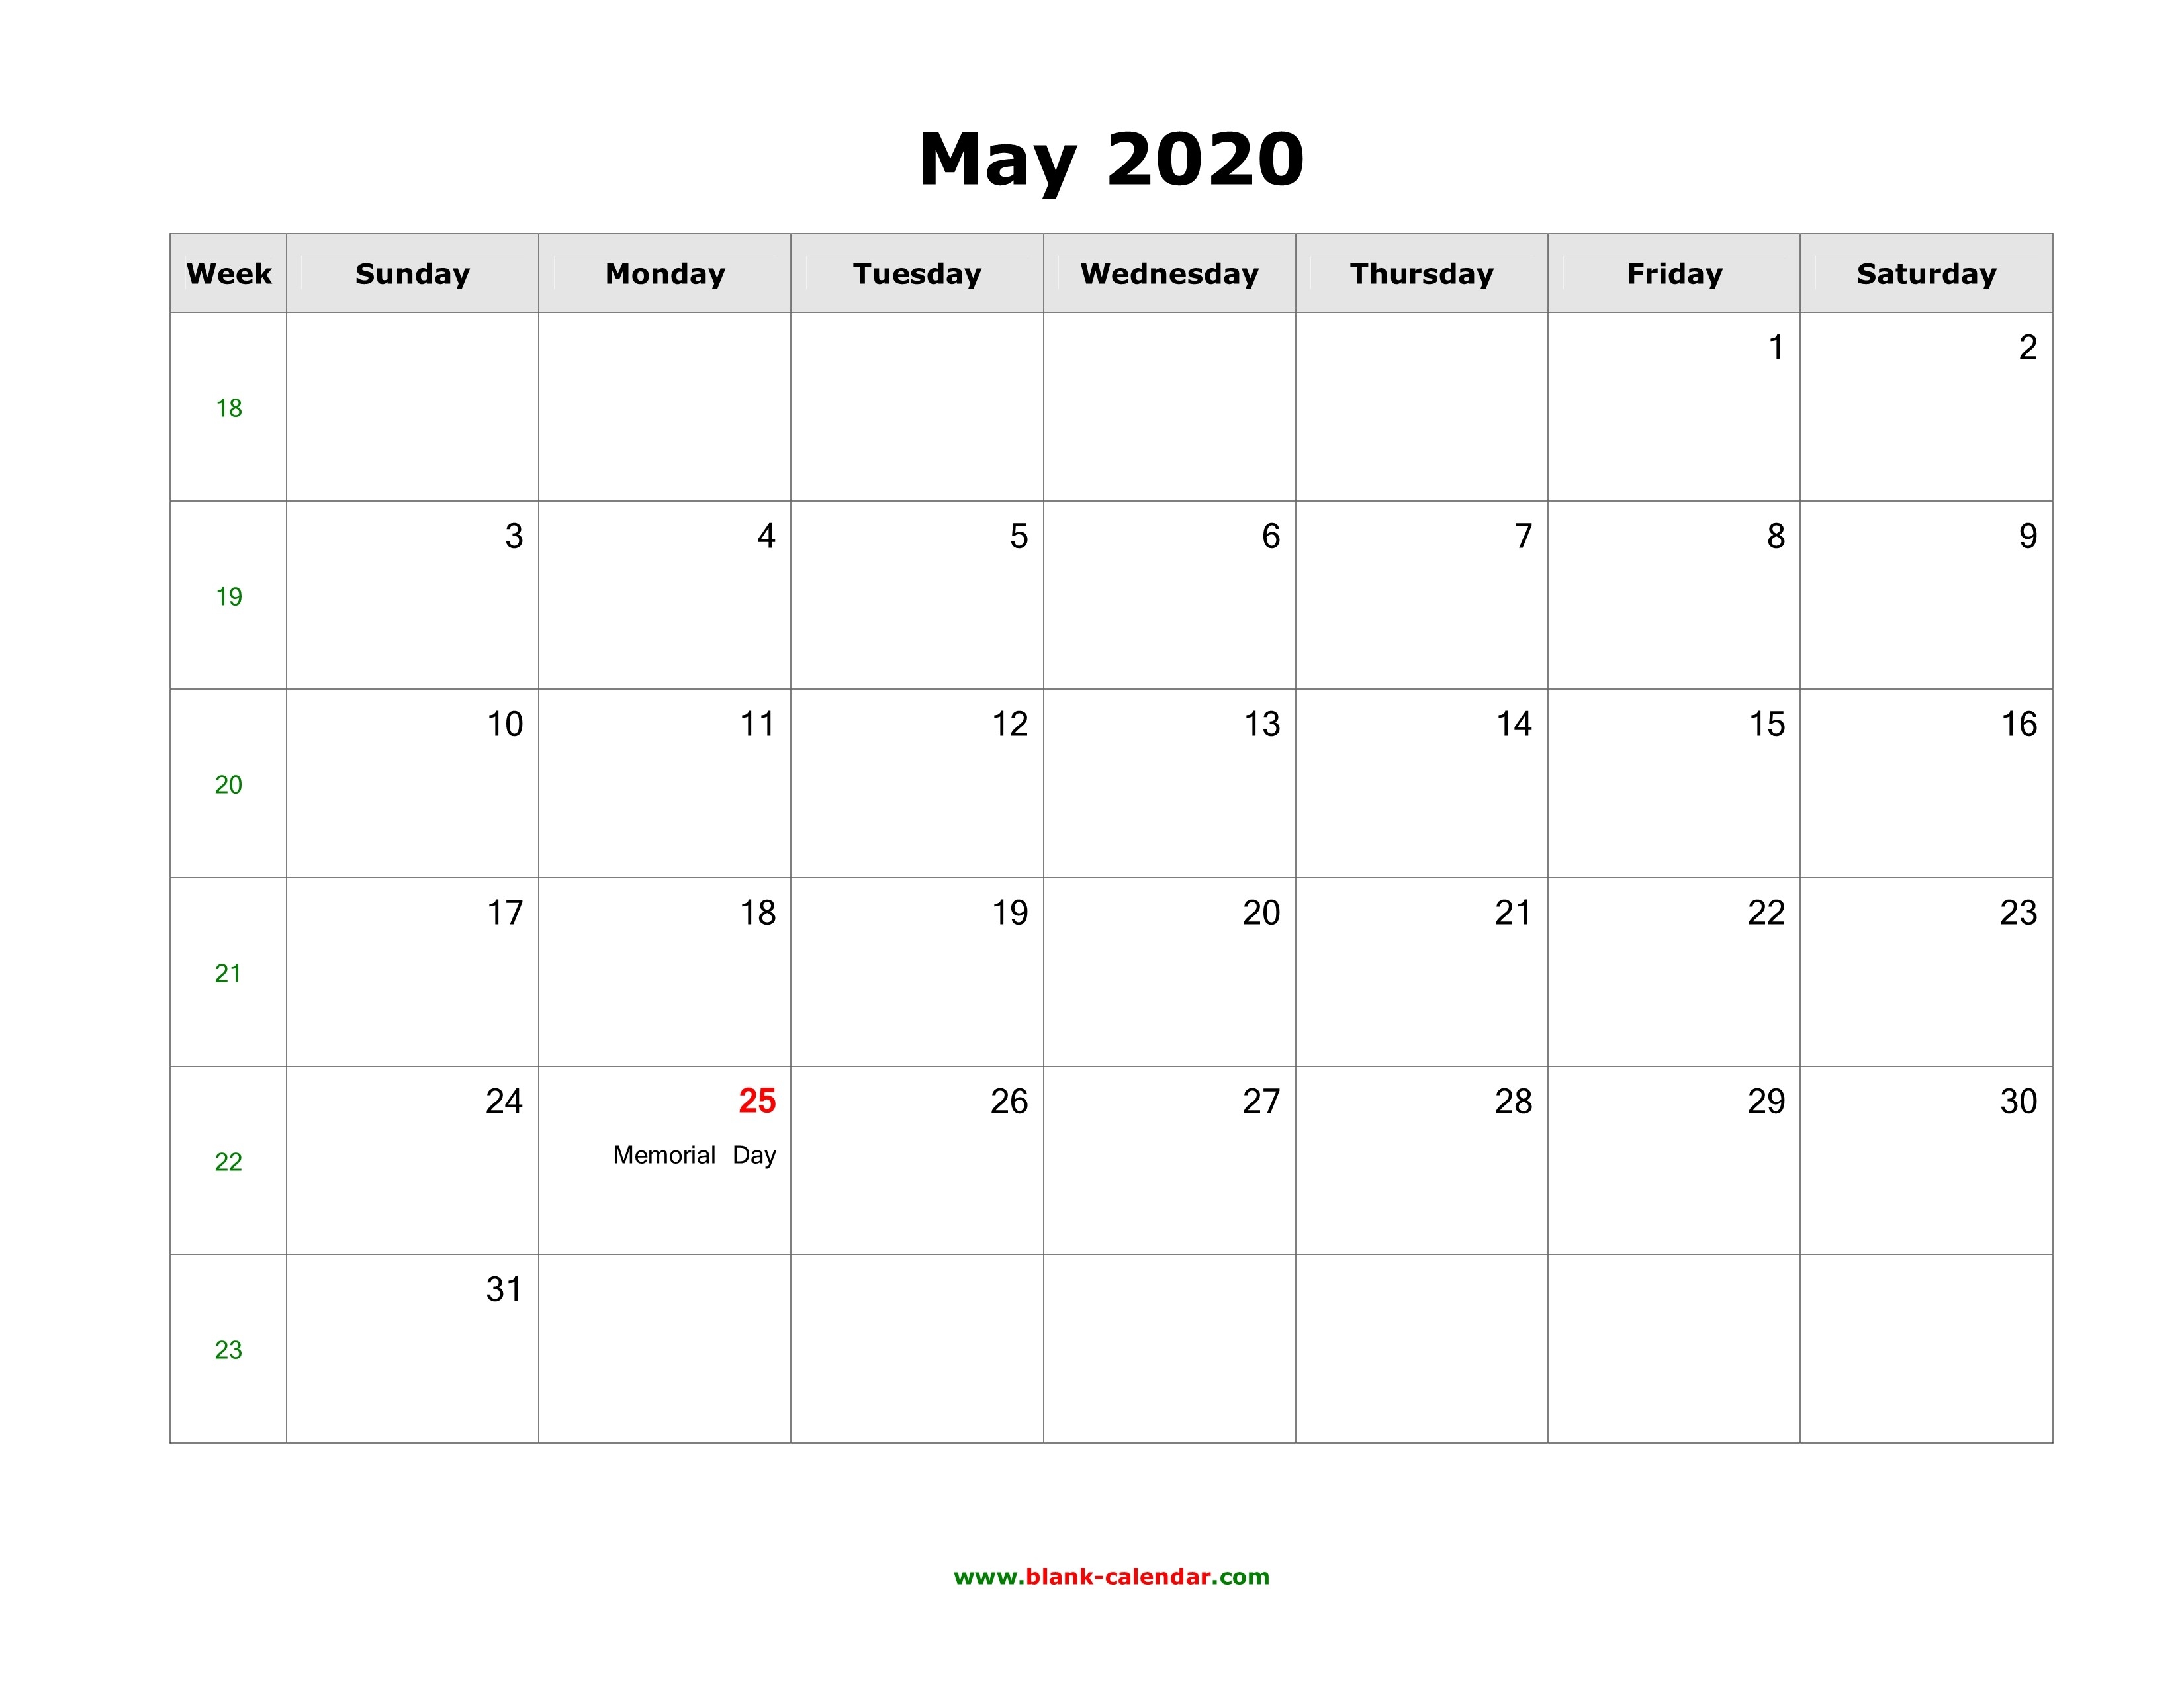 Download May 2020 Blank Calendar With Us Holidays (Horizontal)-2020 May All Holidays